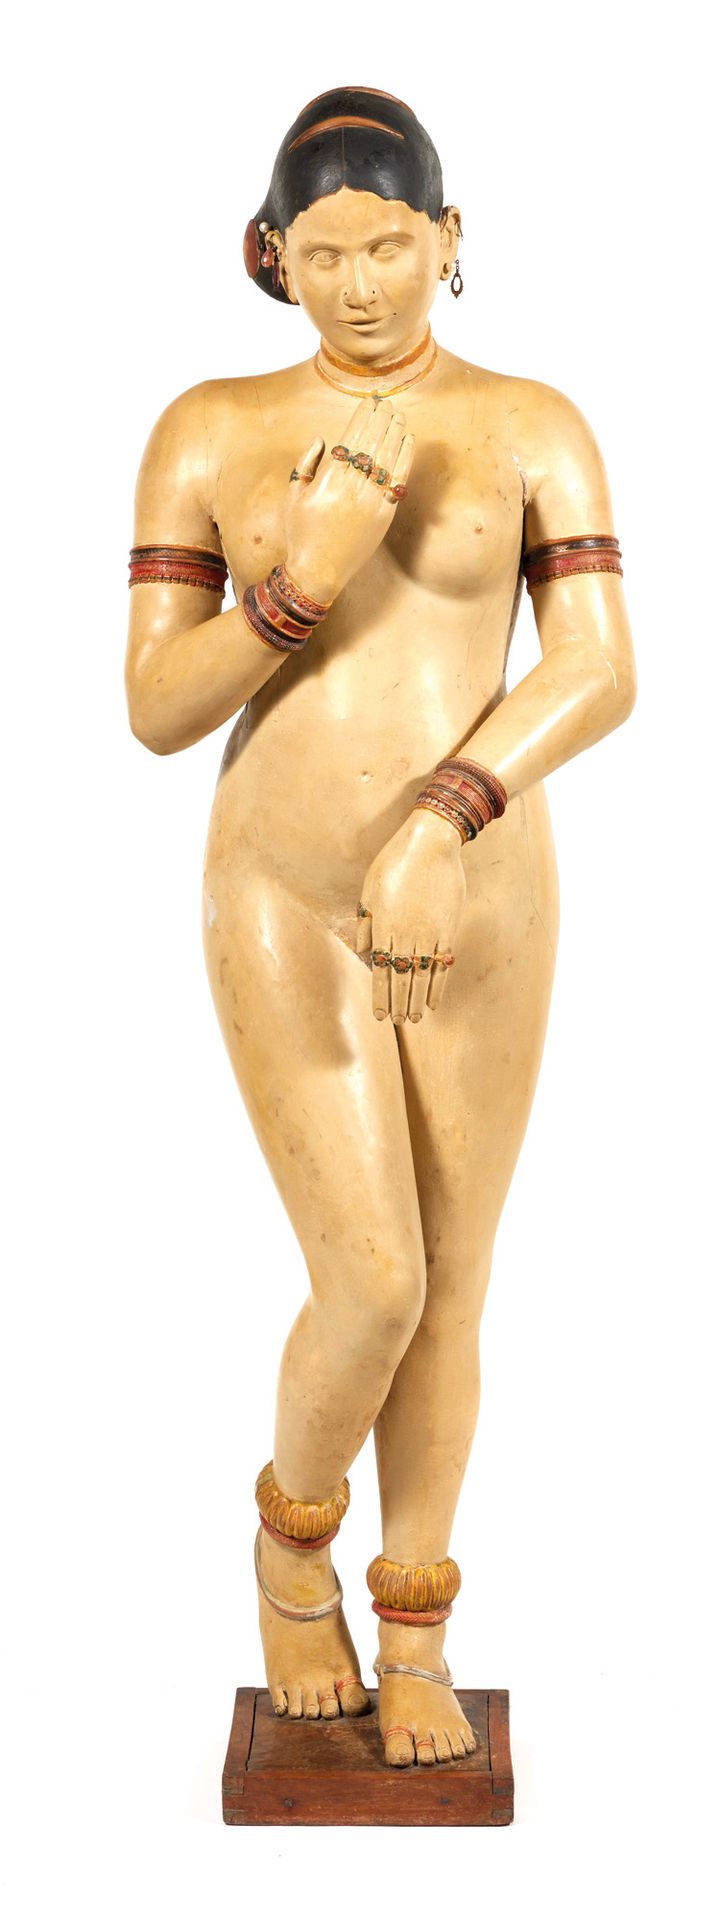 Vénus pudique Schamhafte Venus

Polychrome, stuckierte Holzskulptur auf einem vi&hellip;